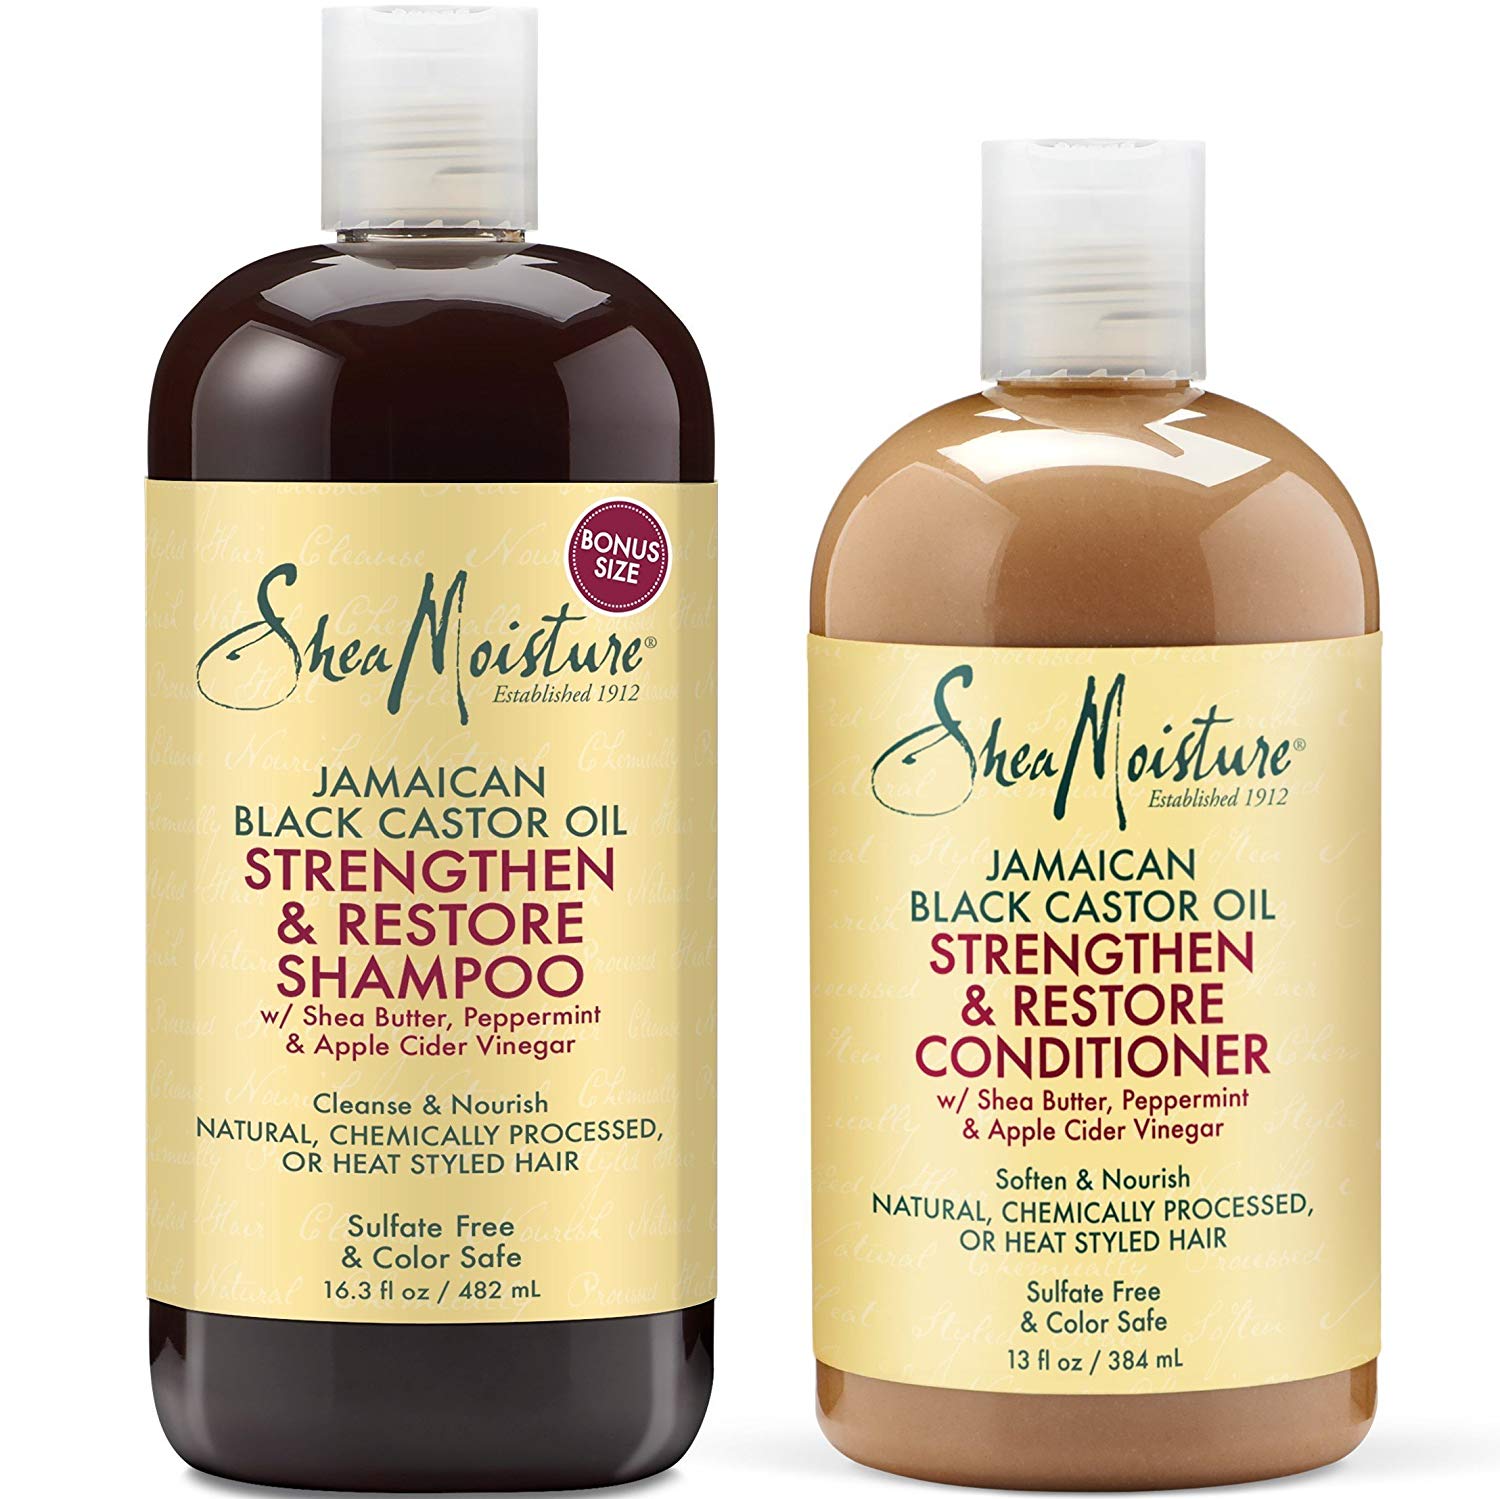 shea-moisture-shampoo-review-does-it-work-the-global-shuffle